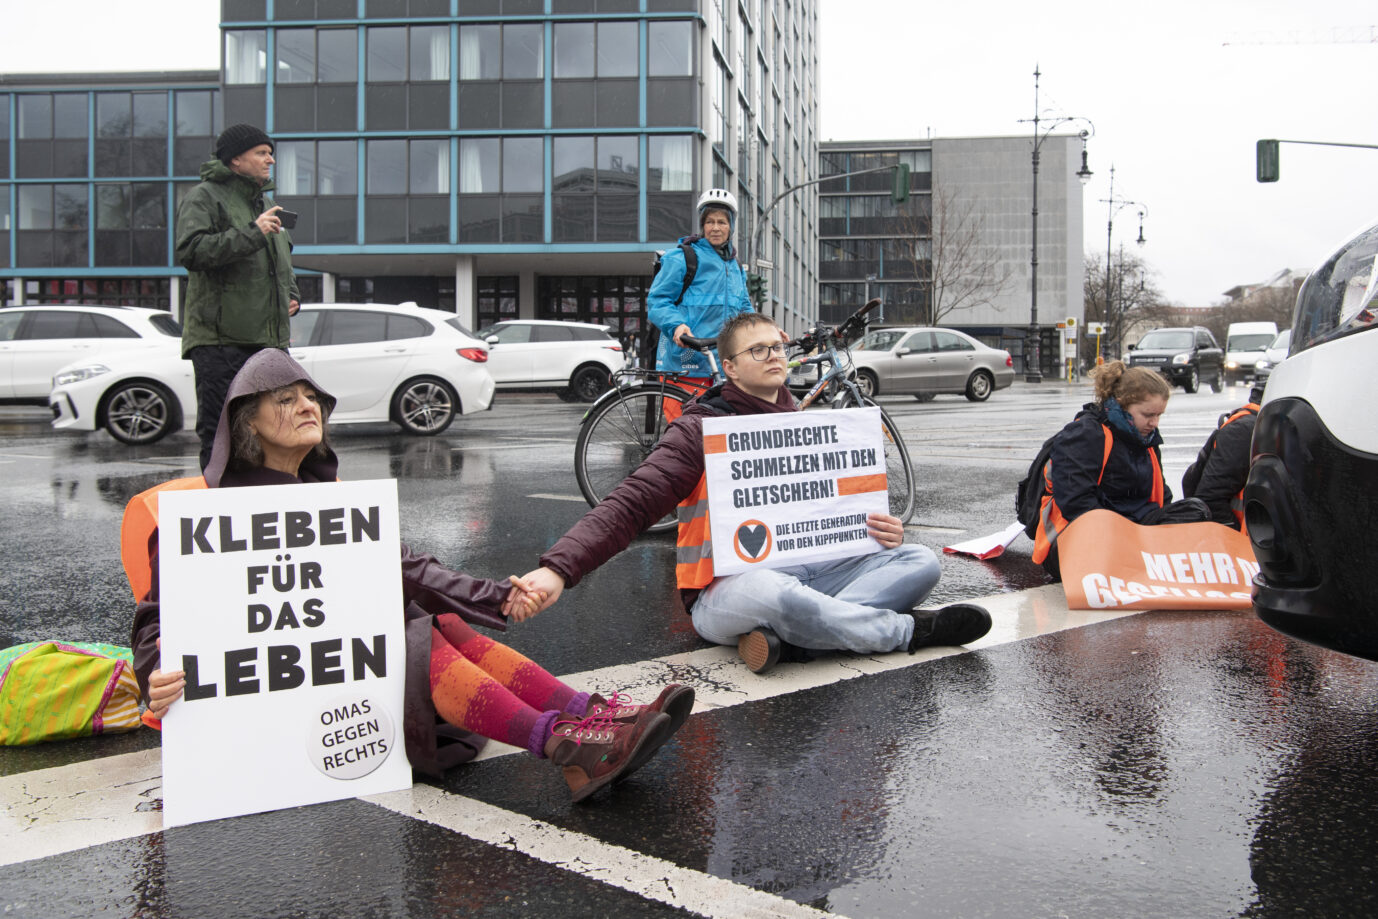 Die "Letzte Generation" blockiert immer wieder Straßen in Berlin und ruft jetzt zu neuen Aktionen auf.